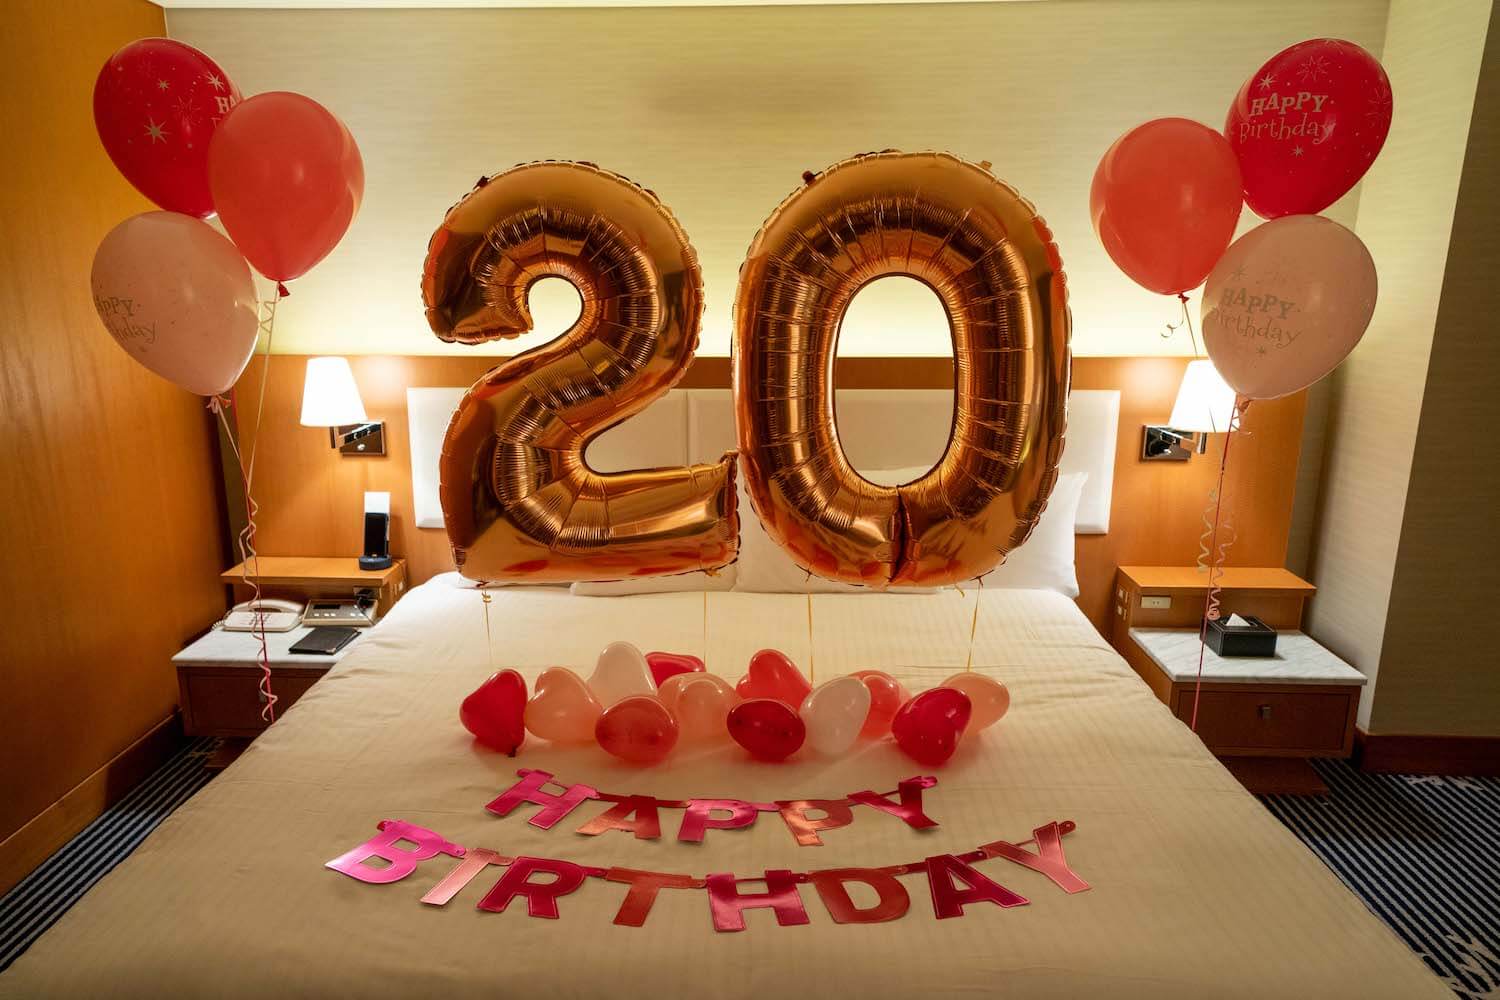 H 9 ピンクor青 お誕生日の歳記念サプライズ バルーン出張装飾 ホテルサプライズ 誕生日やプロポーズはアニプラバルーン